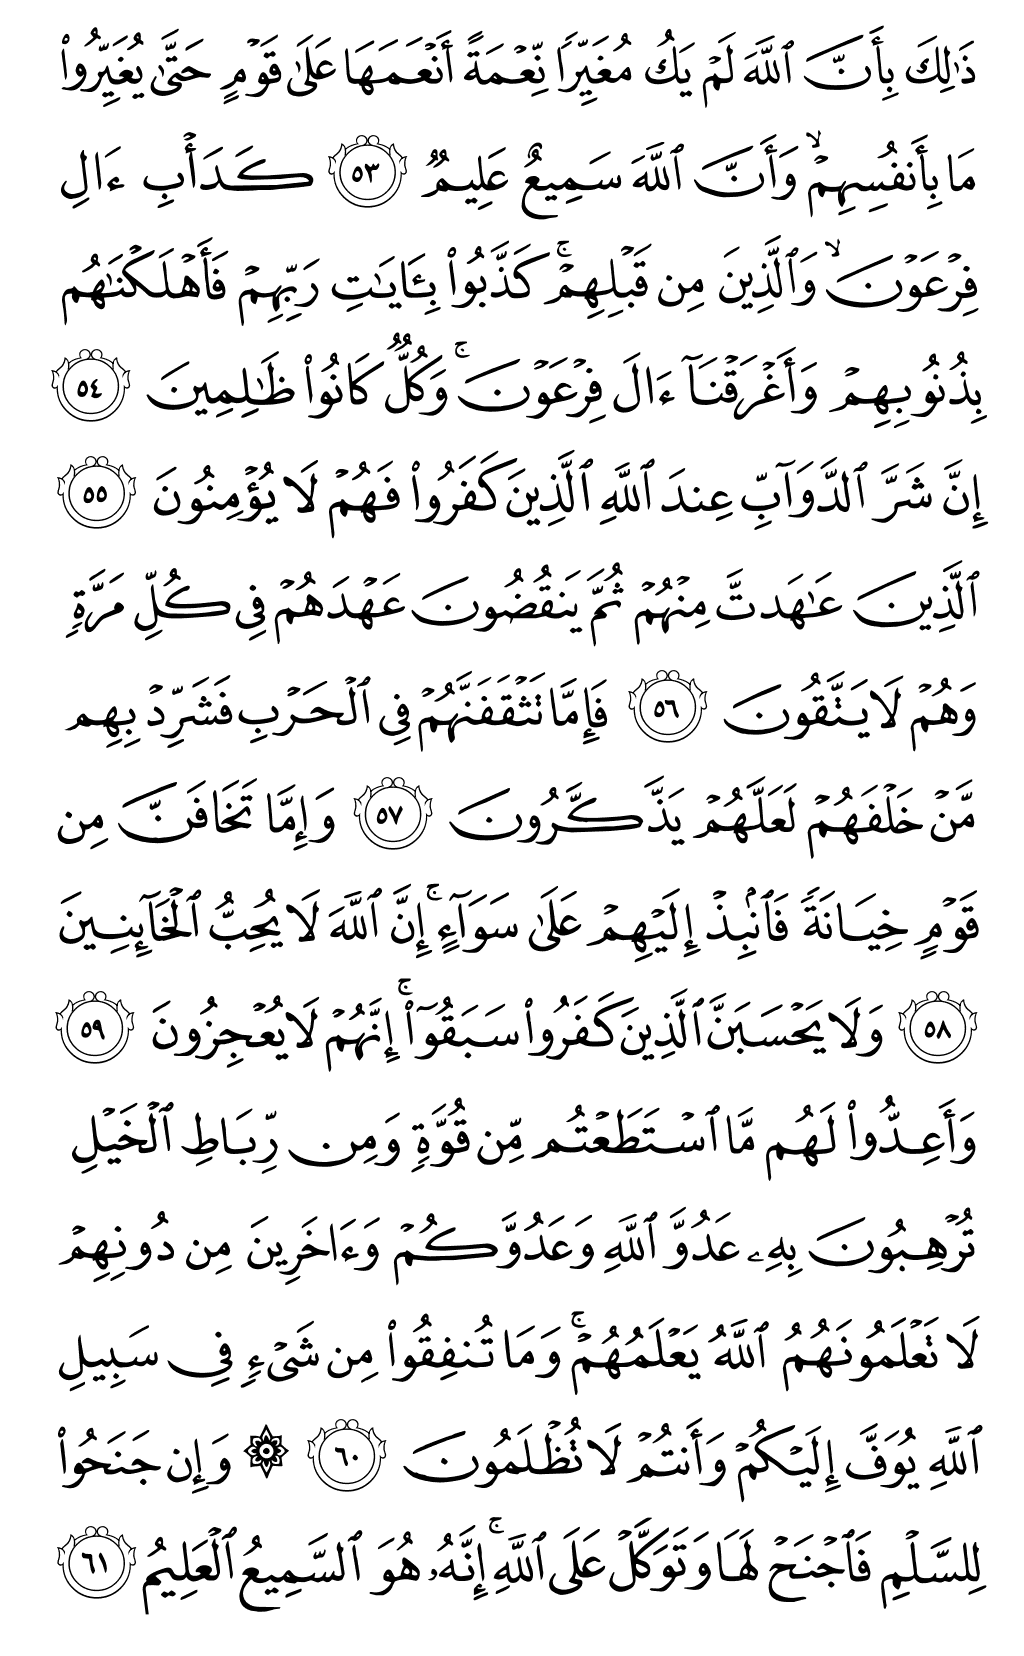 الصفحة رقم 184 من القرآن الكريم